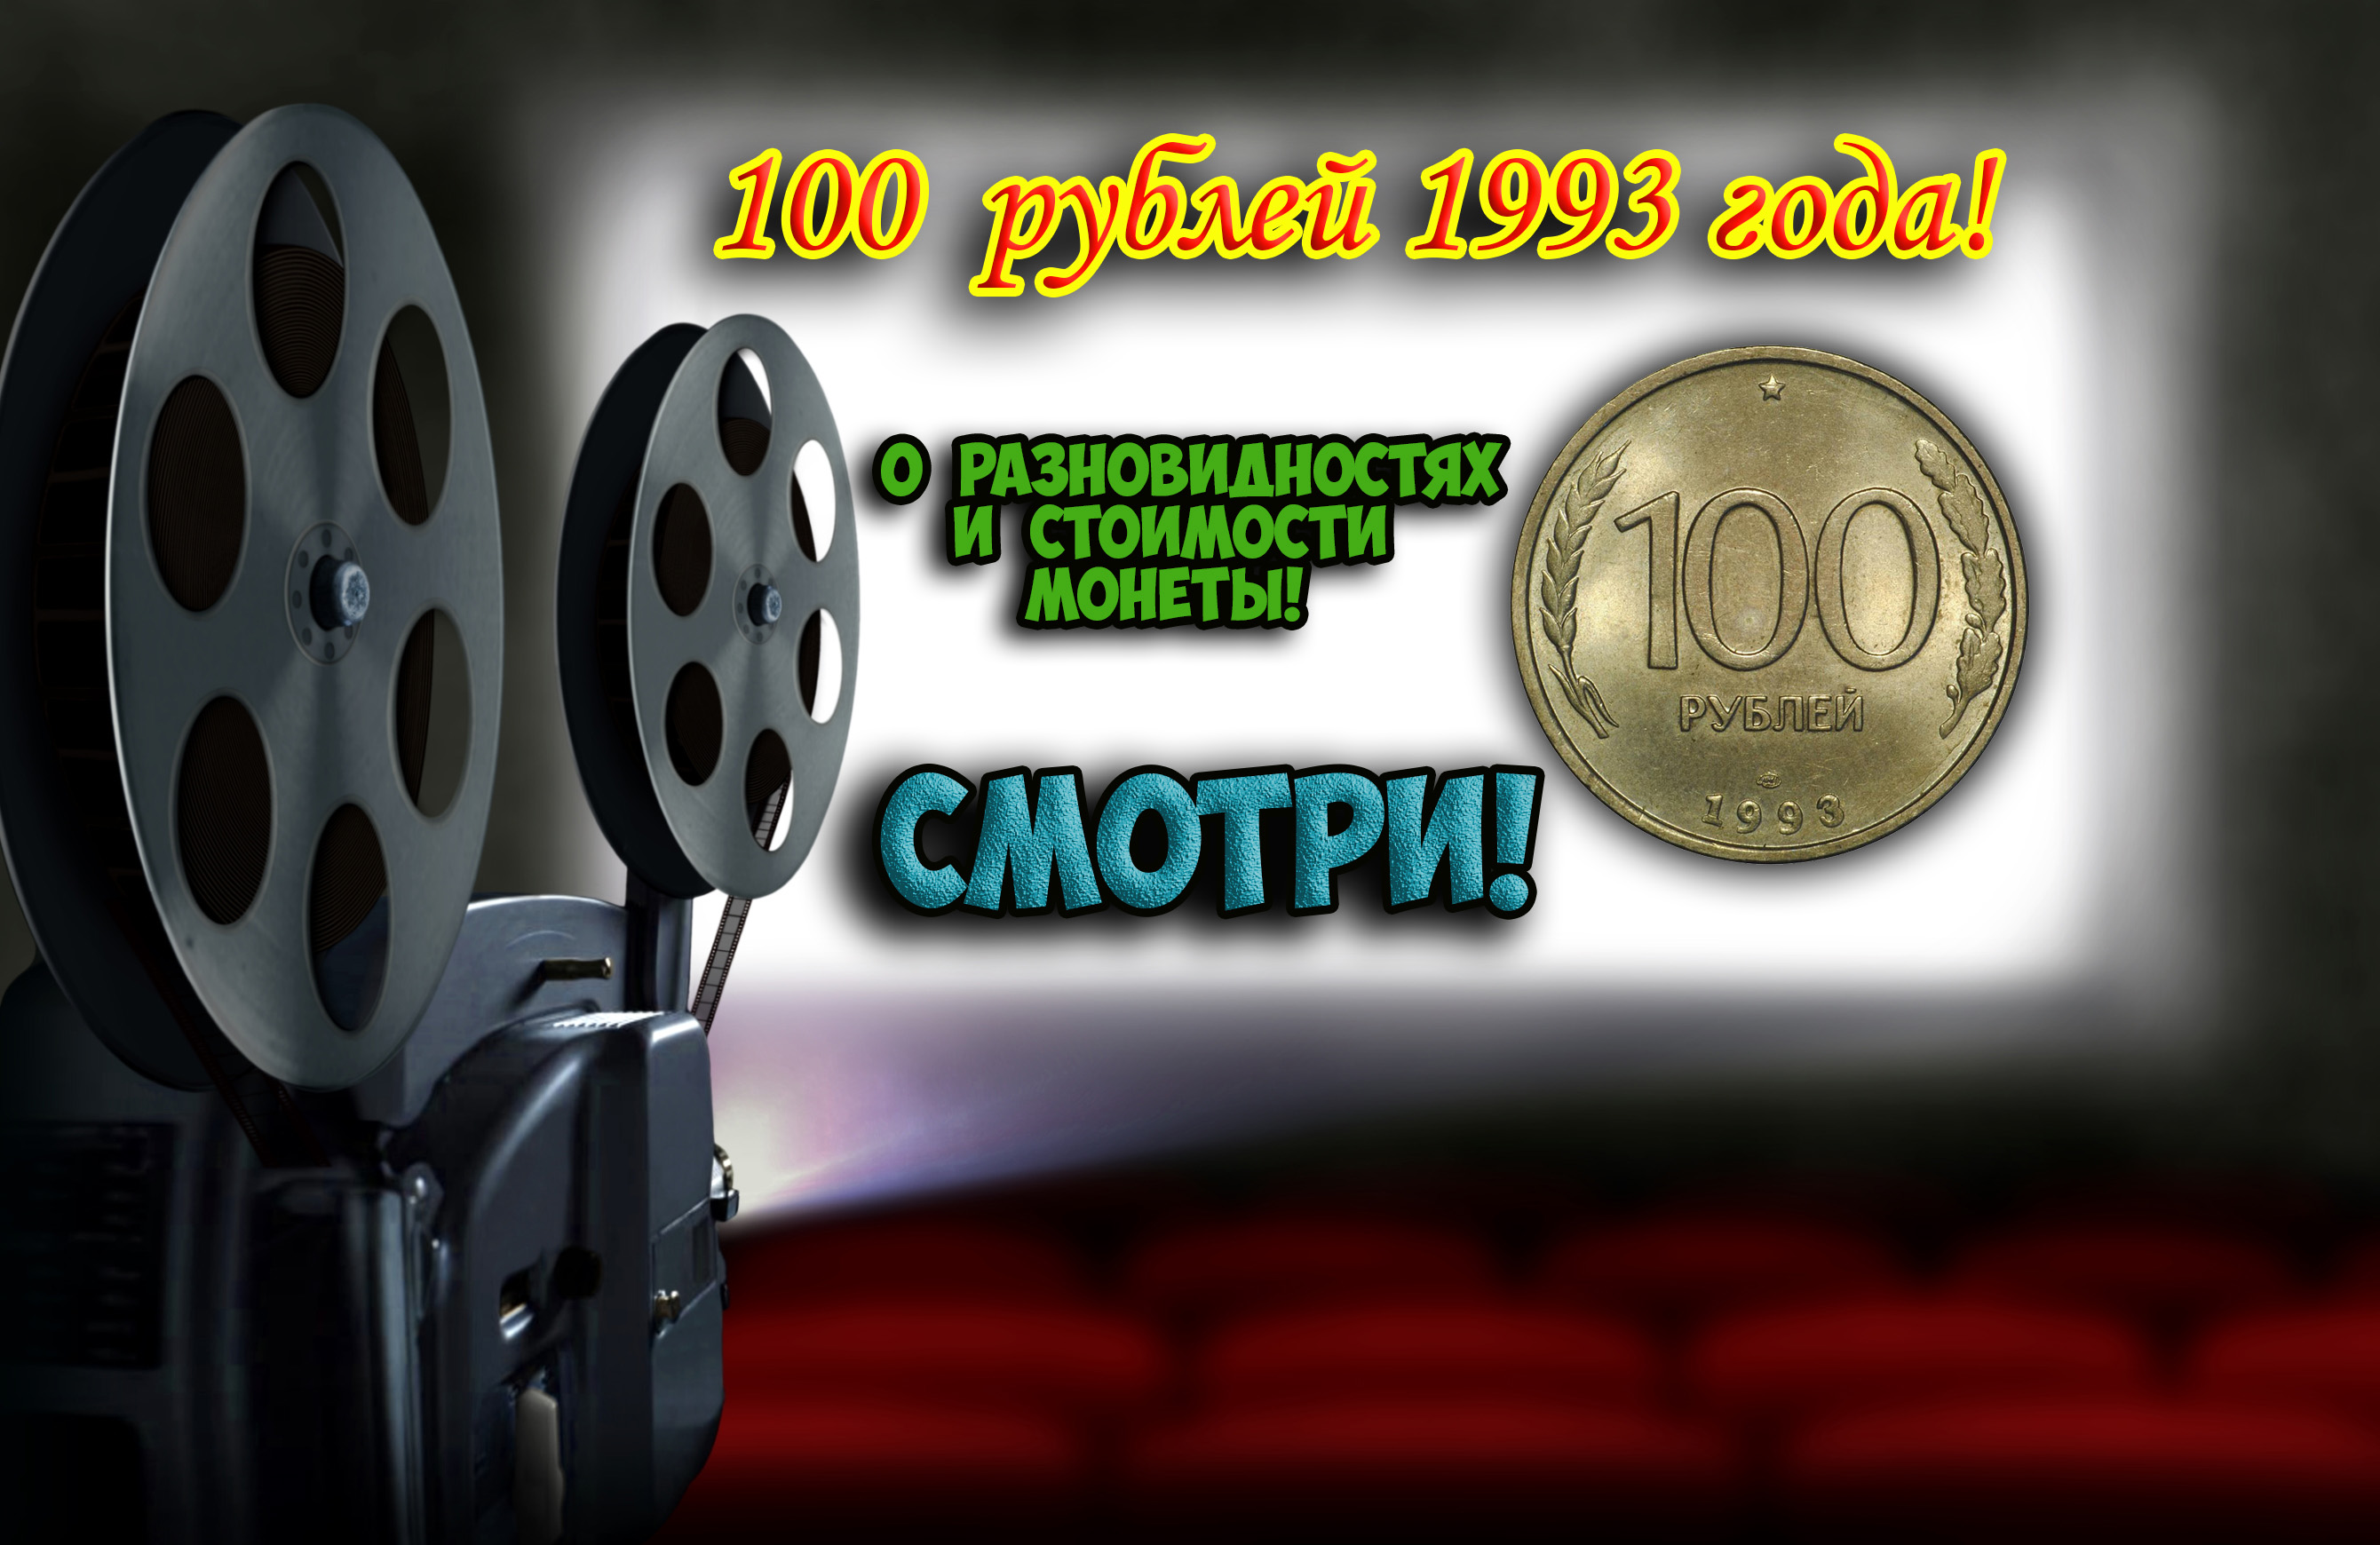 100 рублей 1993 года, есть ли редкие разновидности монеты? Их стоимость.